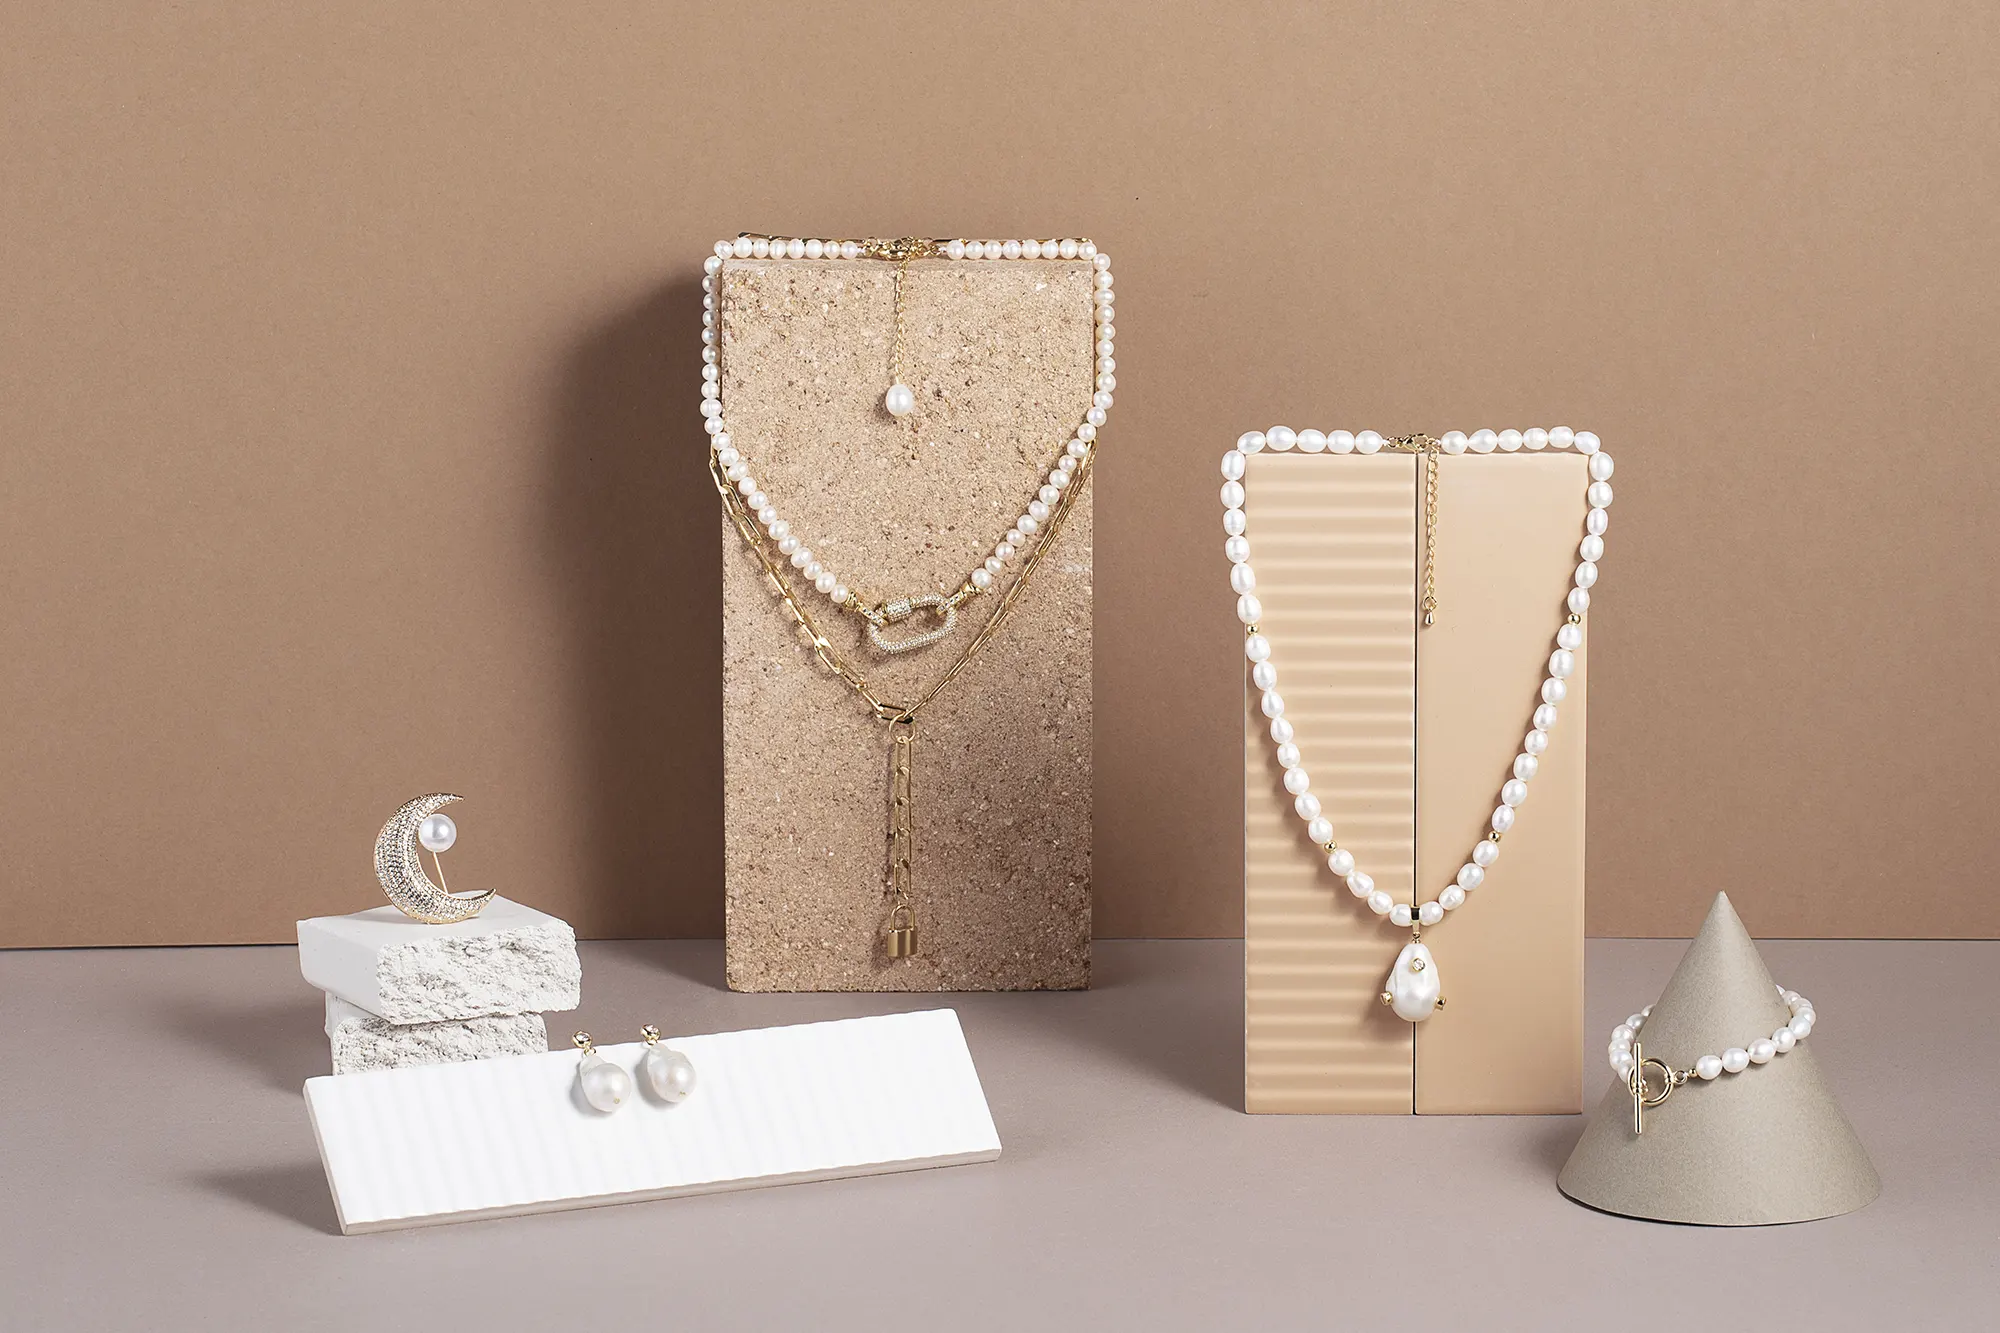 Tricia Design jewelery